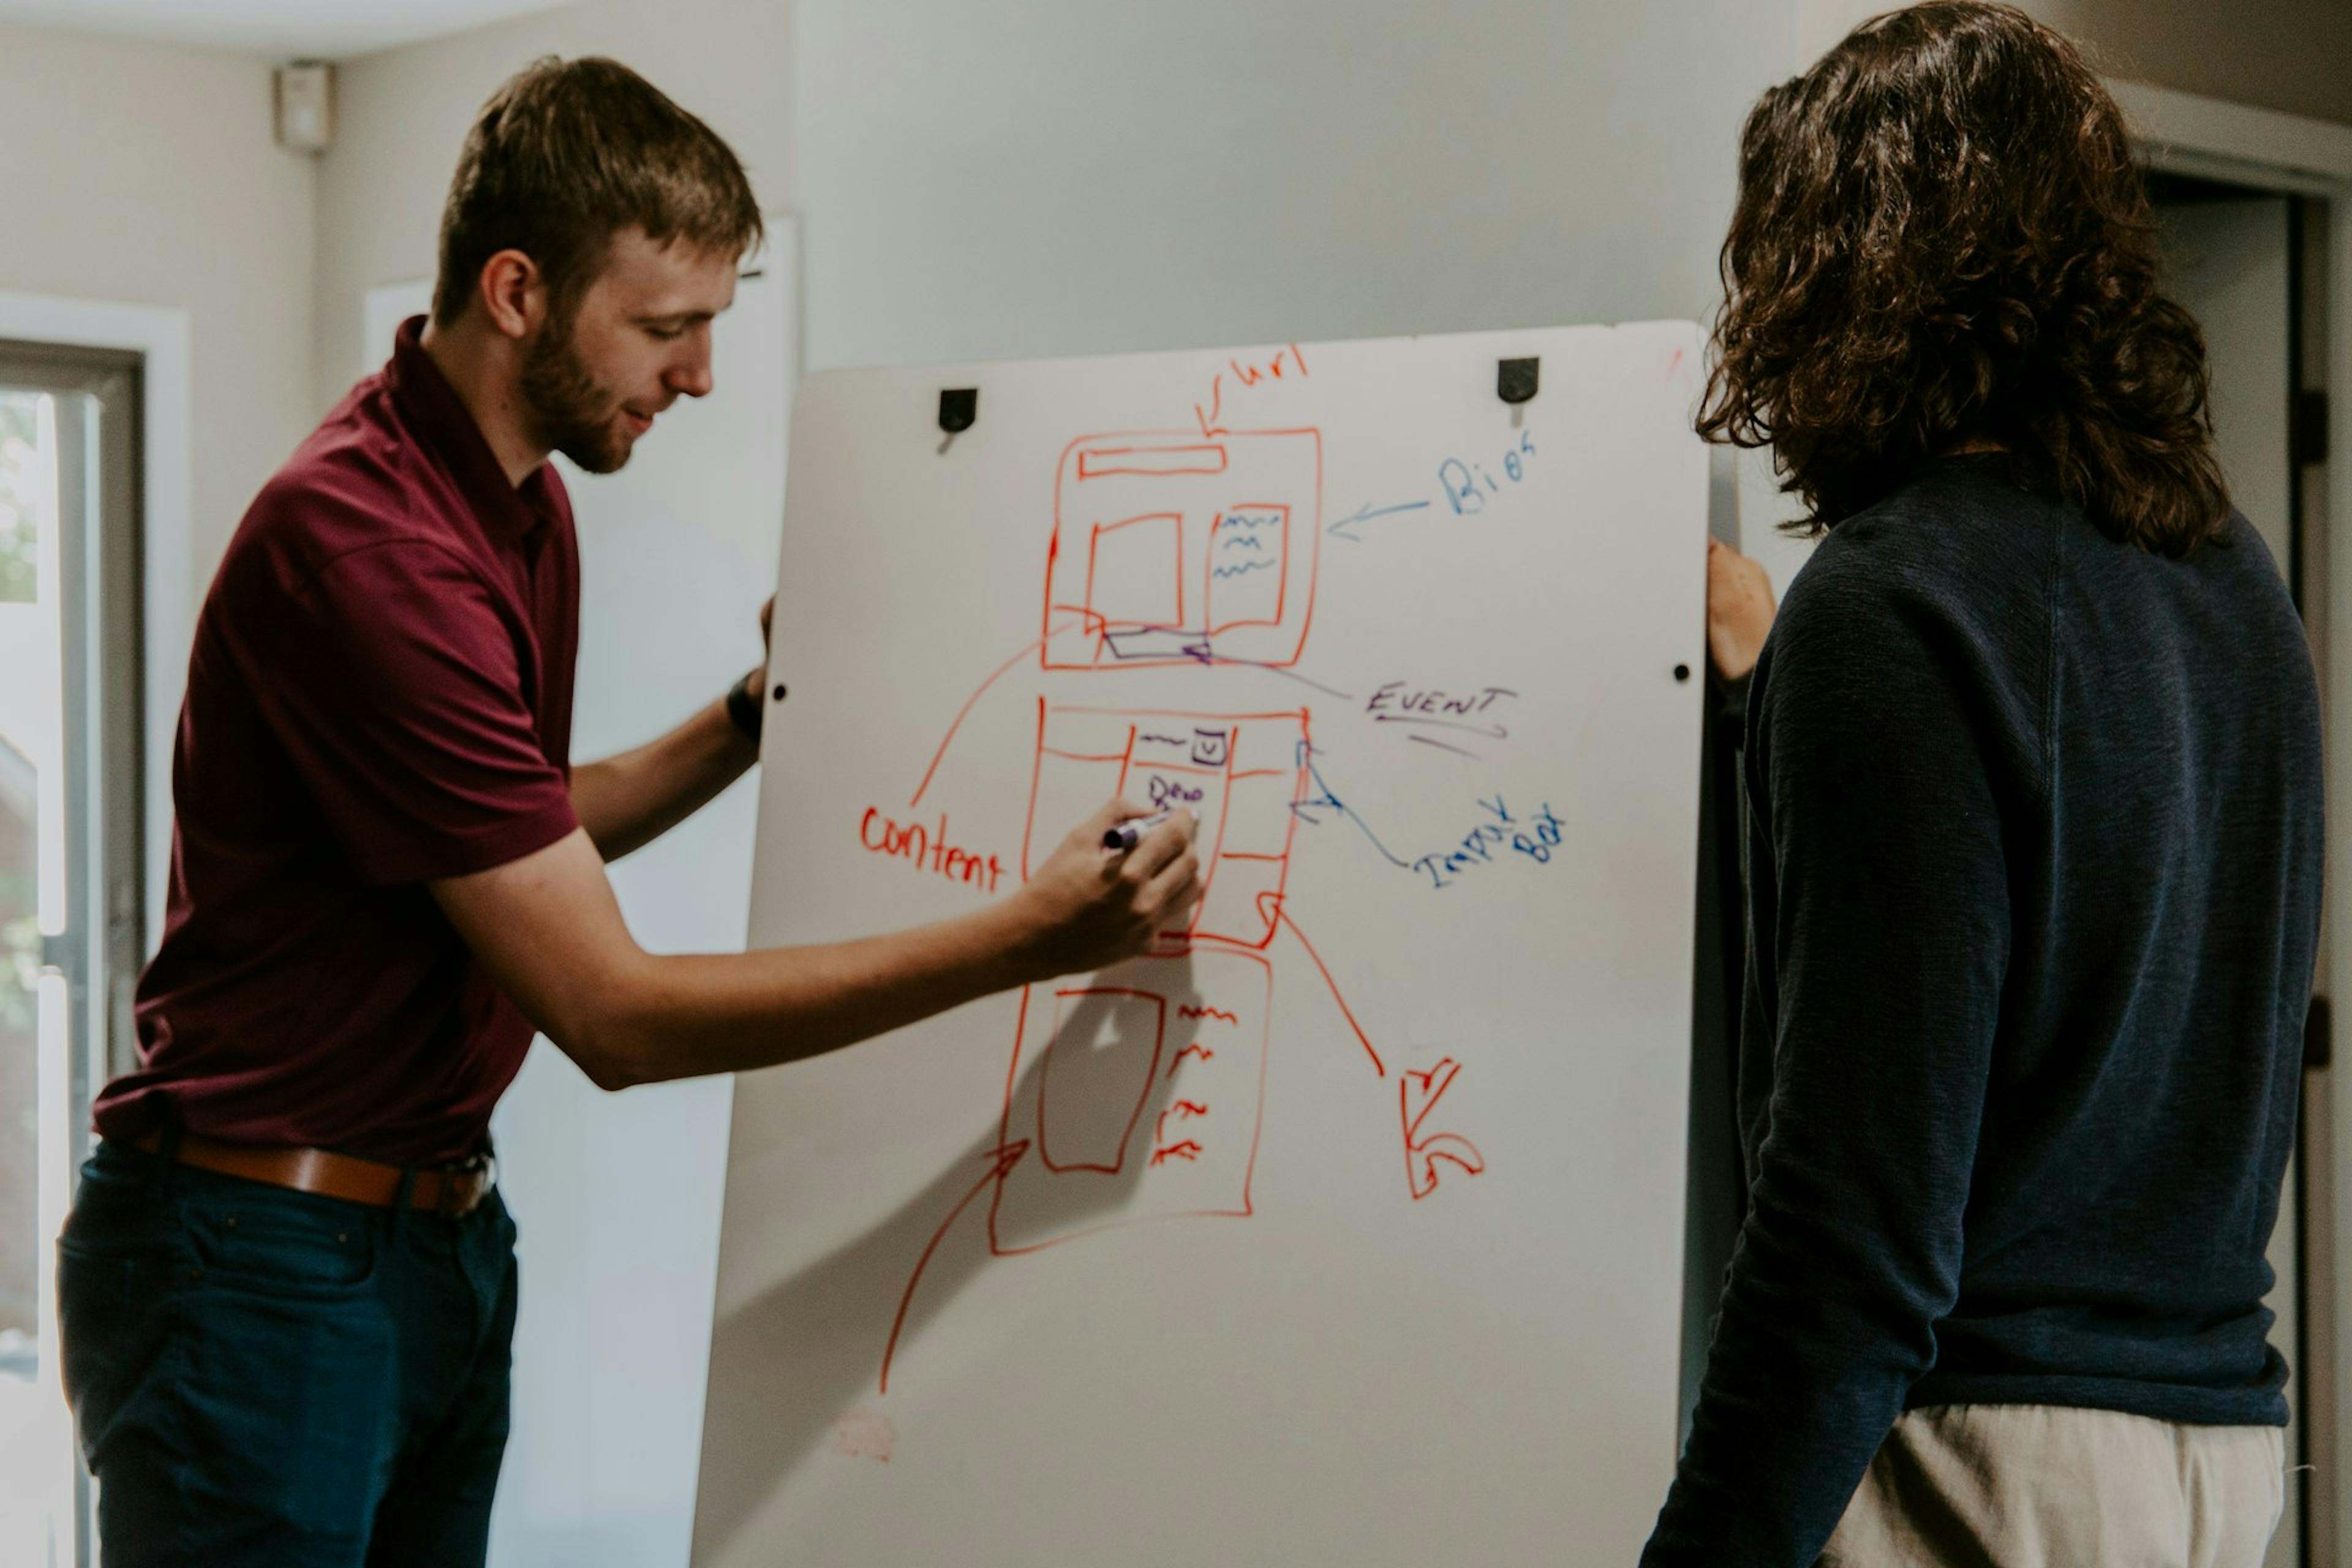 Zwei Personen arbeiten gemeinsam an der Visualisierung eines Inhaltsmodells auf einem Whiteboard.